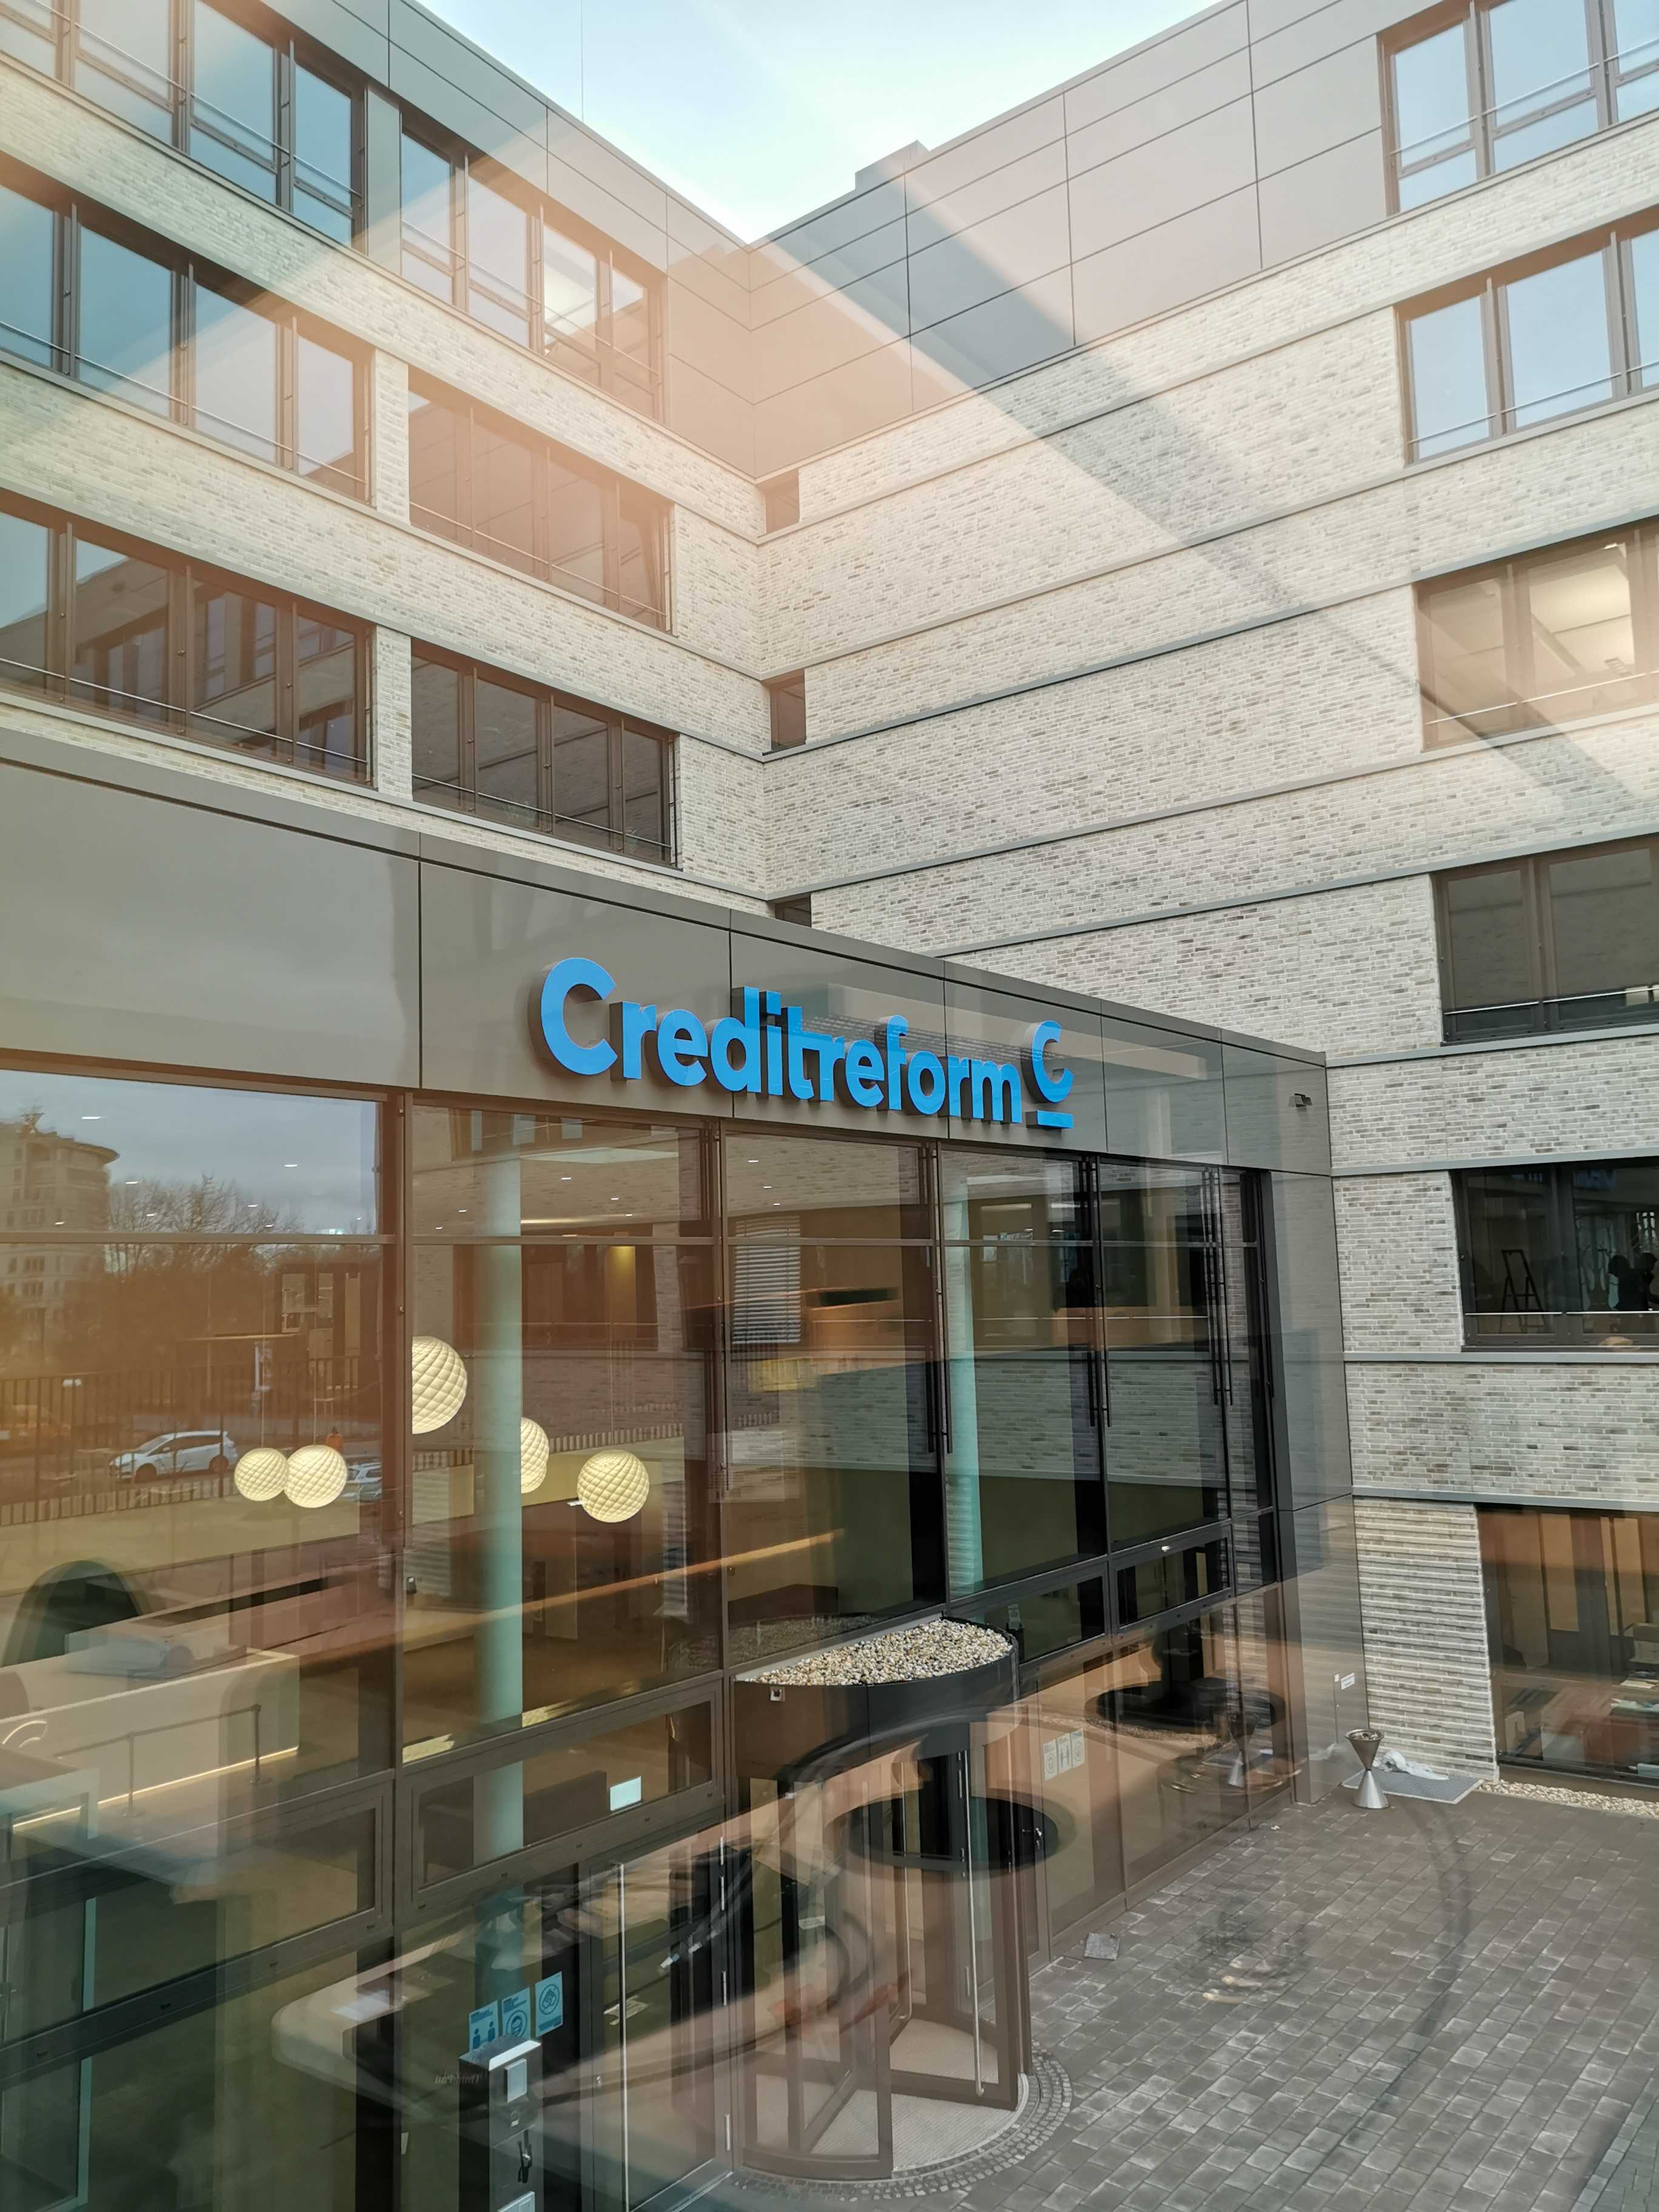 Kundenbild groß 1 Verband der Vereine Creditreform e.V.